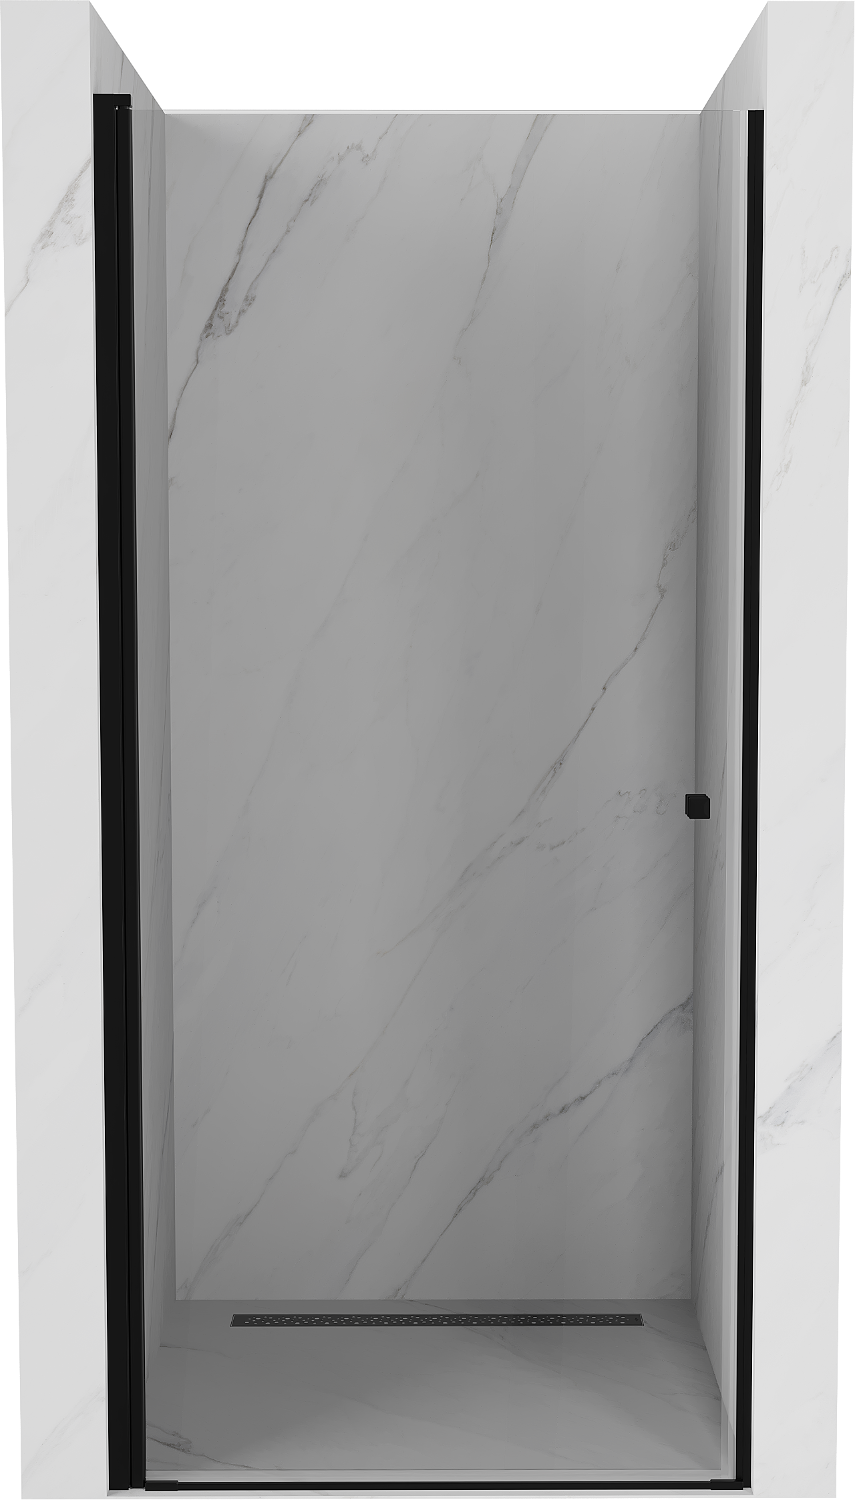 Mexen Pretoria drzwi prysznicowe uchylne 80 cm, transparent, czarne - 852-080-000-70-00